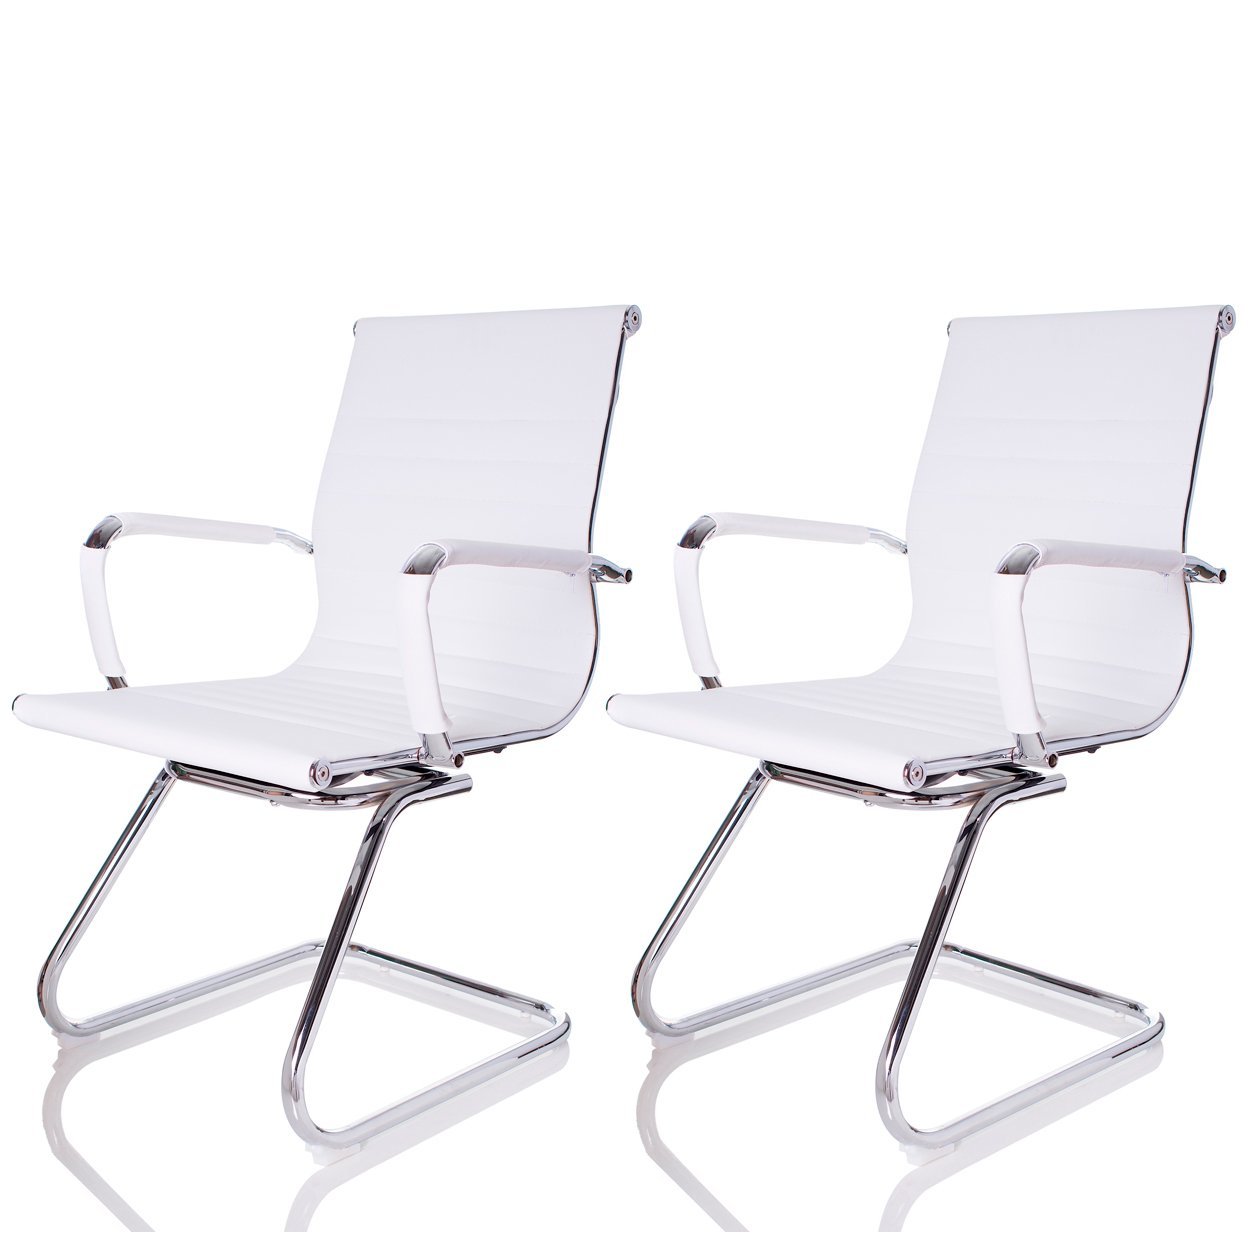 Cadeira Fixa Interlocutor Charles Eames Esteirinha 11a: Branca/2 - 1